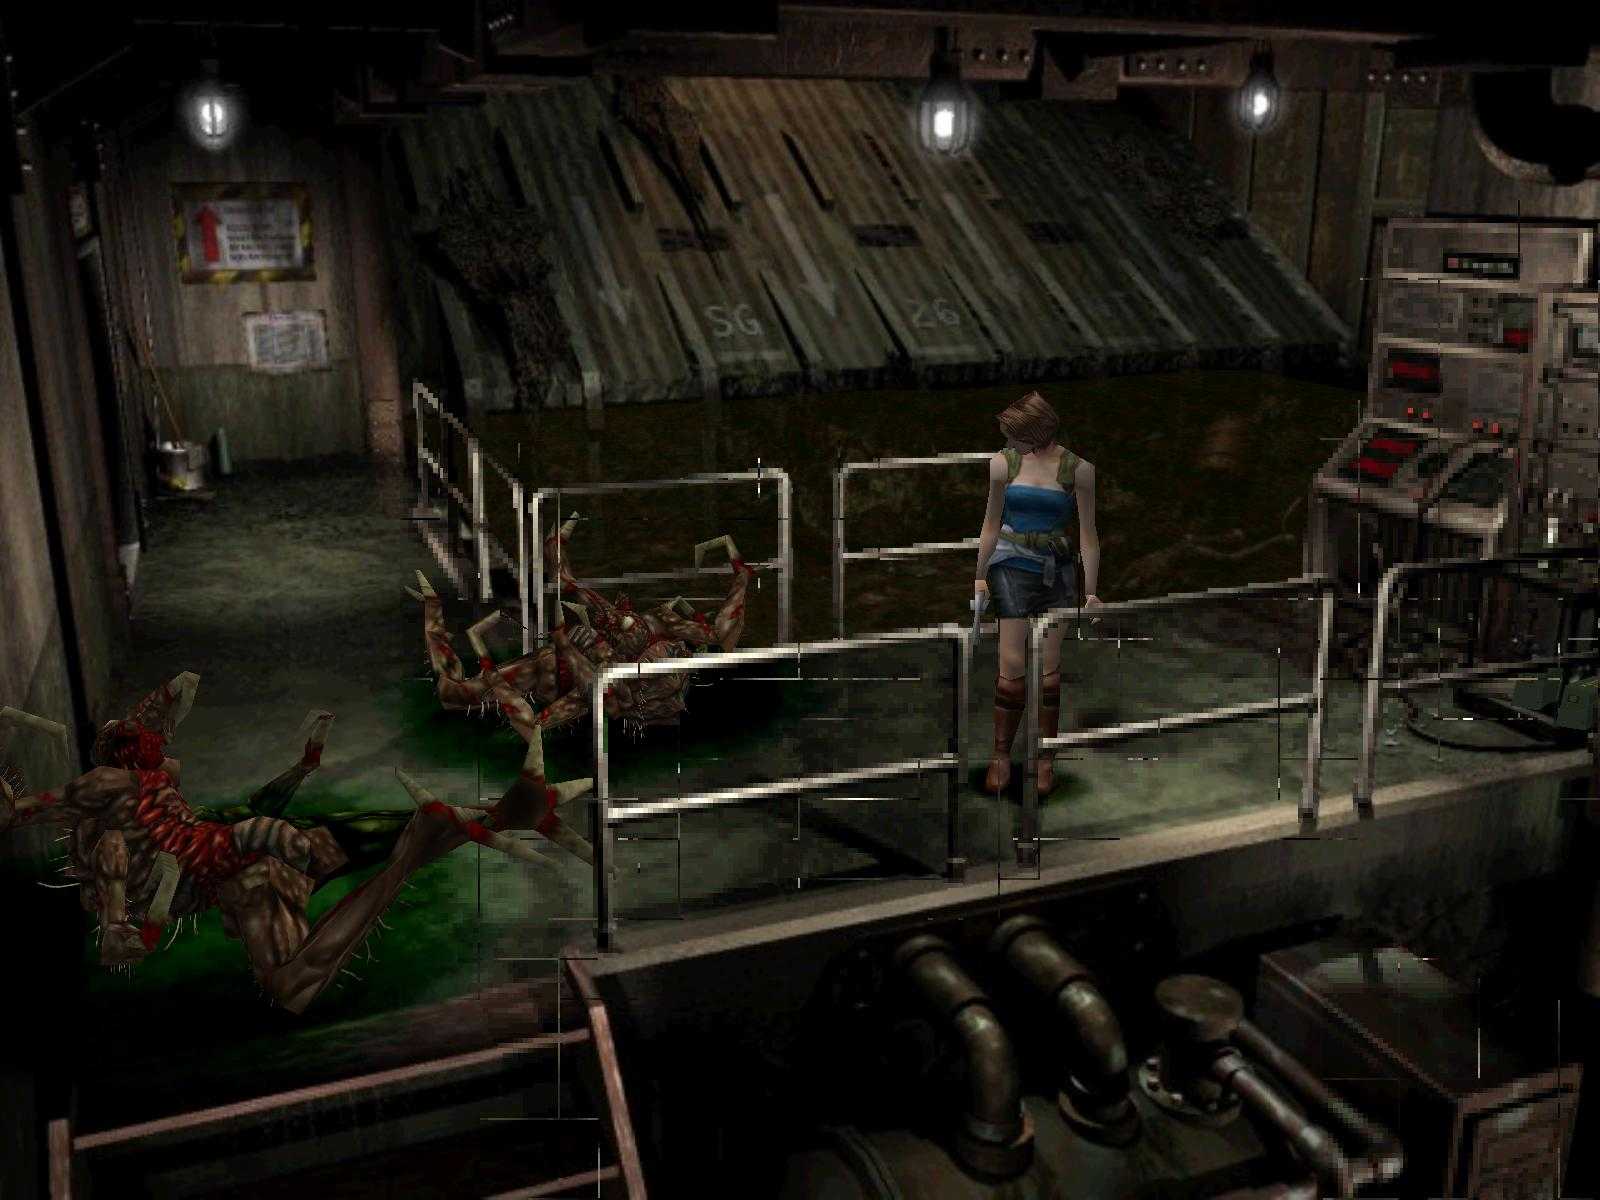 Resident evil все части серии игр в хронологическом порядке